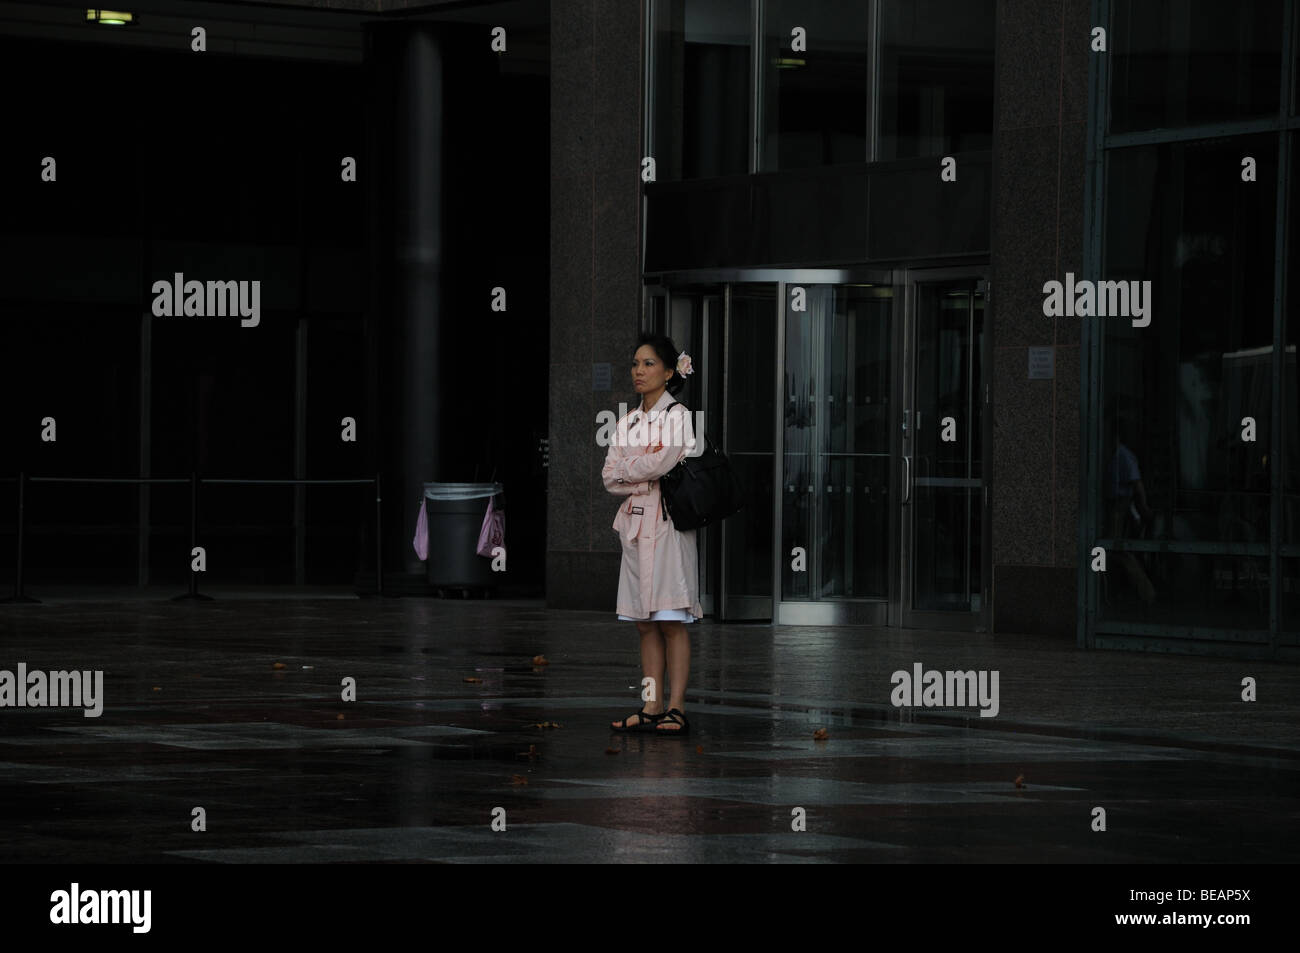 An einem regnerischen Tag im August stand eine böse Frau auf der Plaza des World Financial Centers Stockfoto